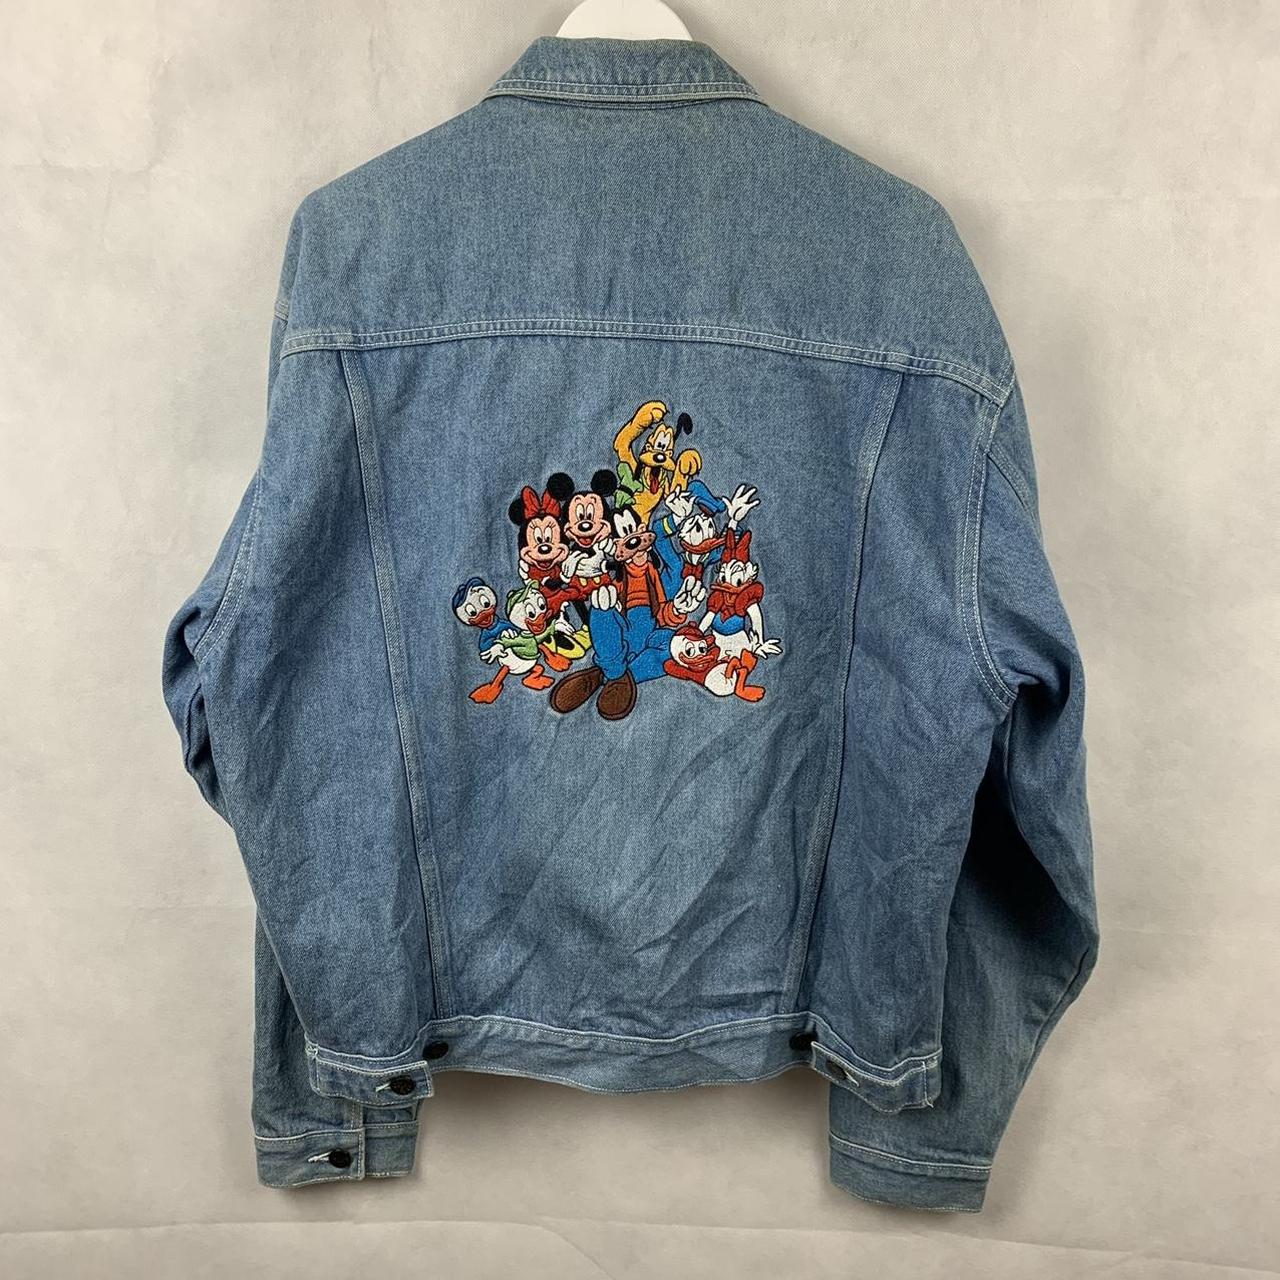 Vintage Disney Denim Jacket Really cute Disney... - Depop